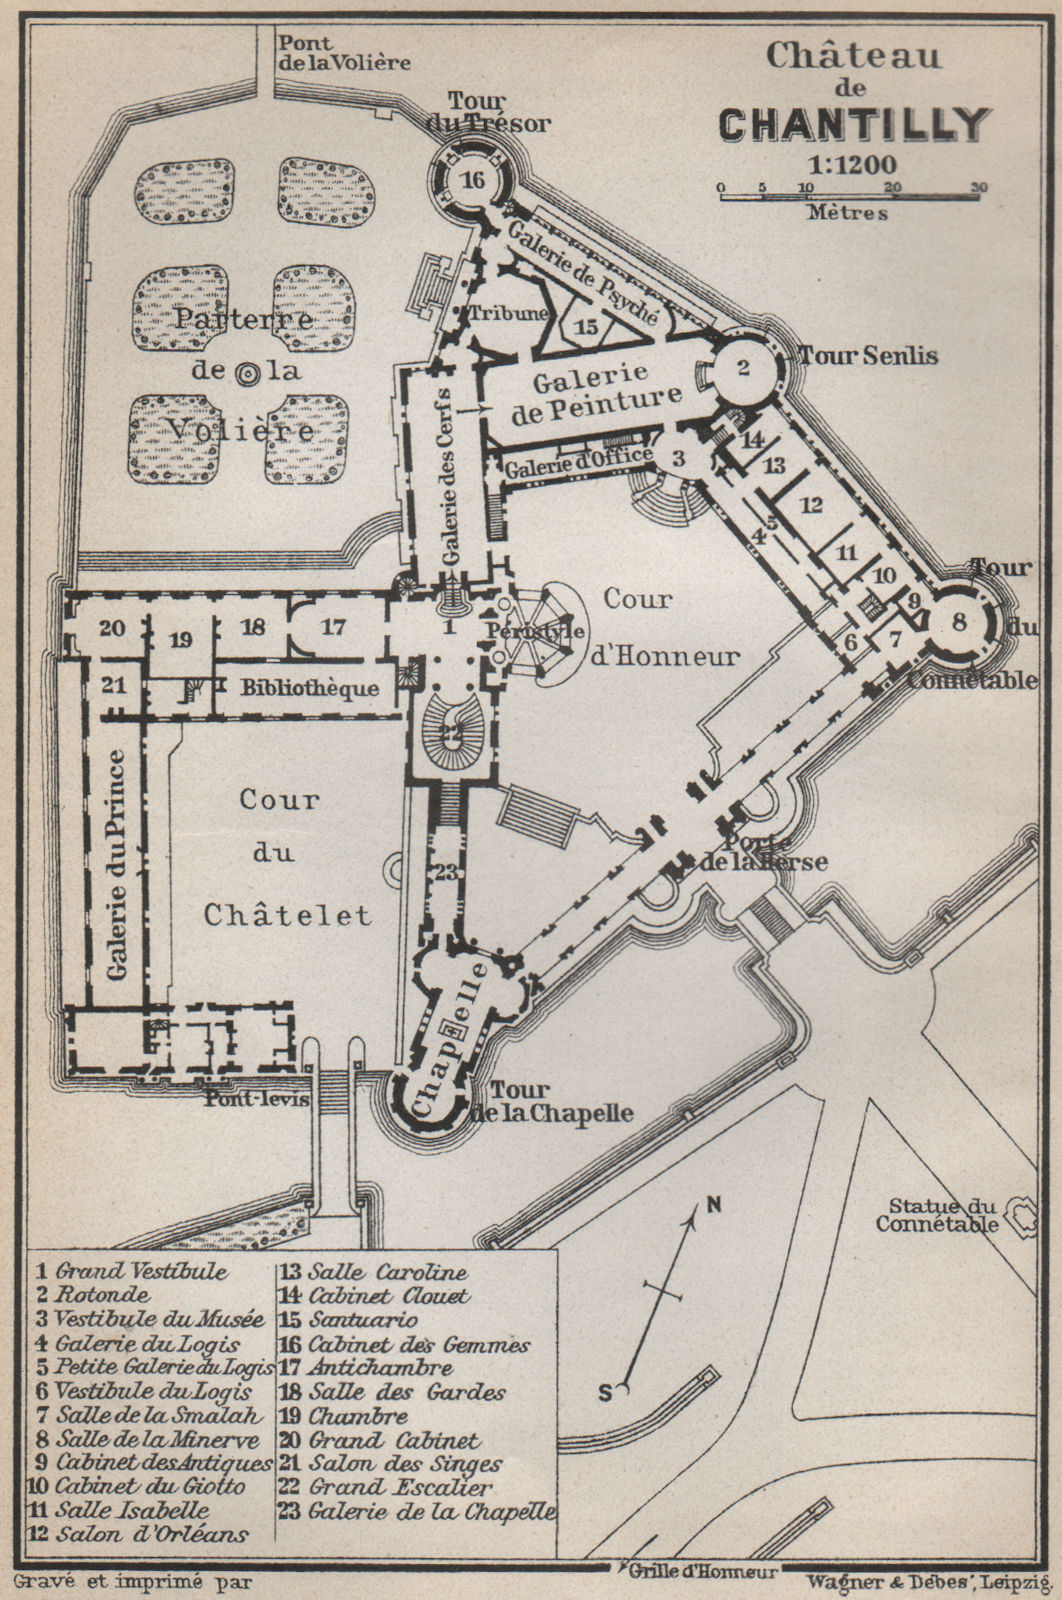 Associate Product CHÂTEAU DE CHANTILLY floor plan. Oise carte. BAEDEKER 1910 old antique map